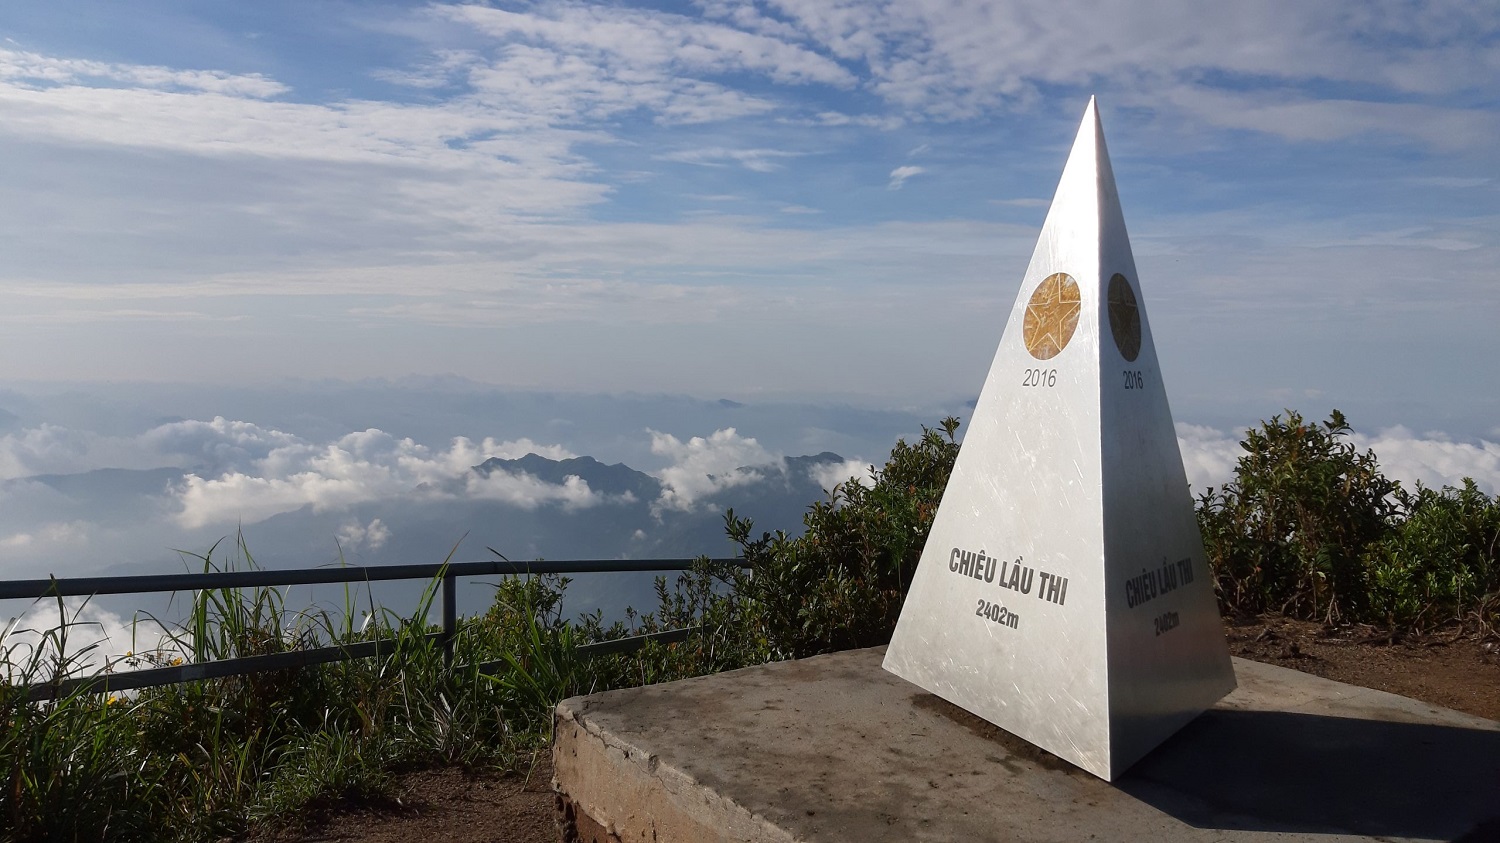 Hành trình trekking Chiêu Lầu Thi lạc giữa biển mây bềnh bồng